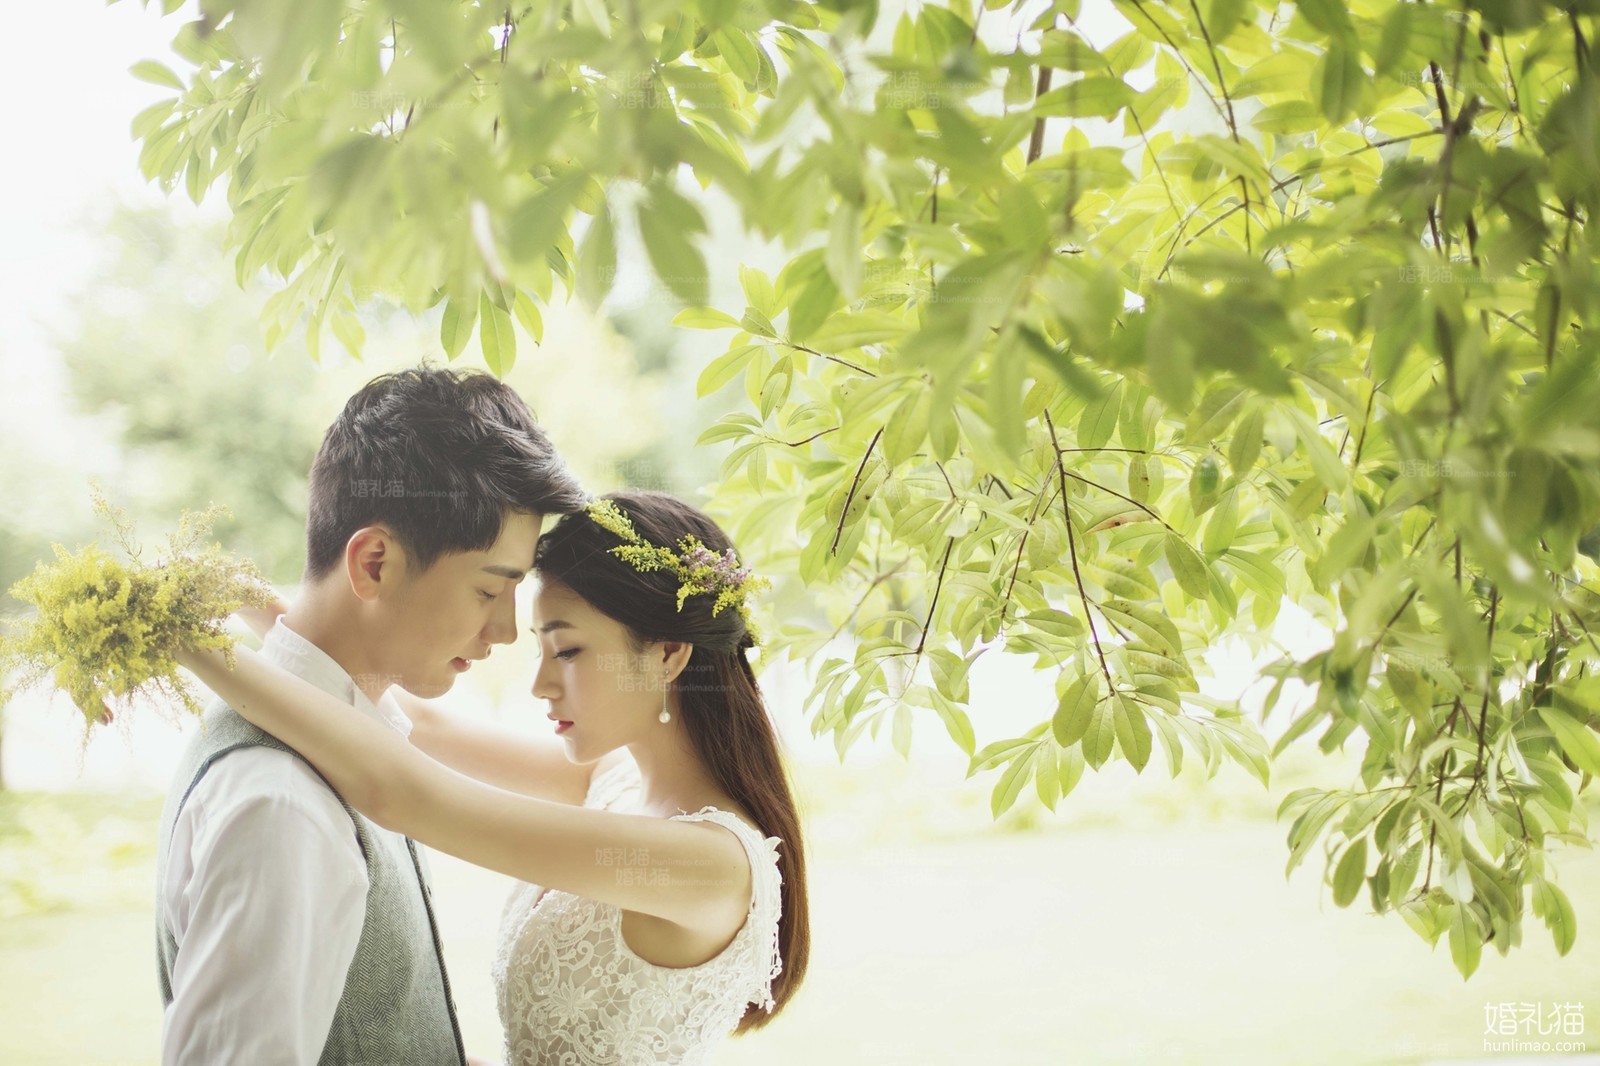 自然清新婚纱照图片,[自然清新],上海婚纱照,婚纱照图片